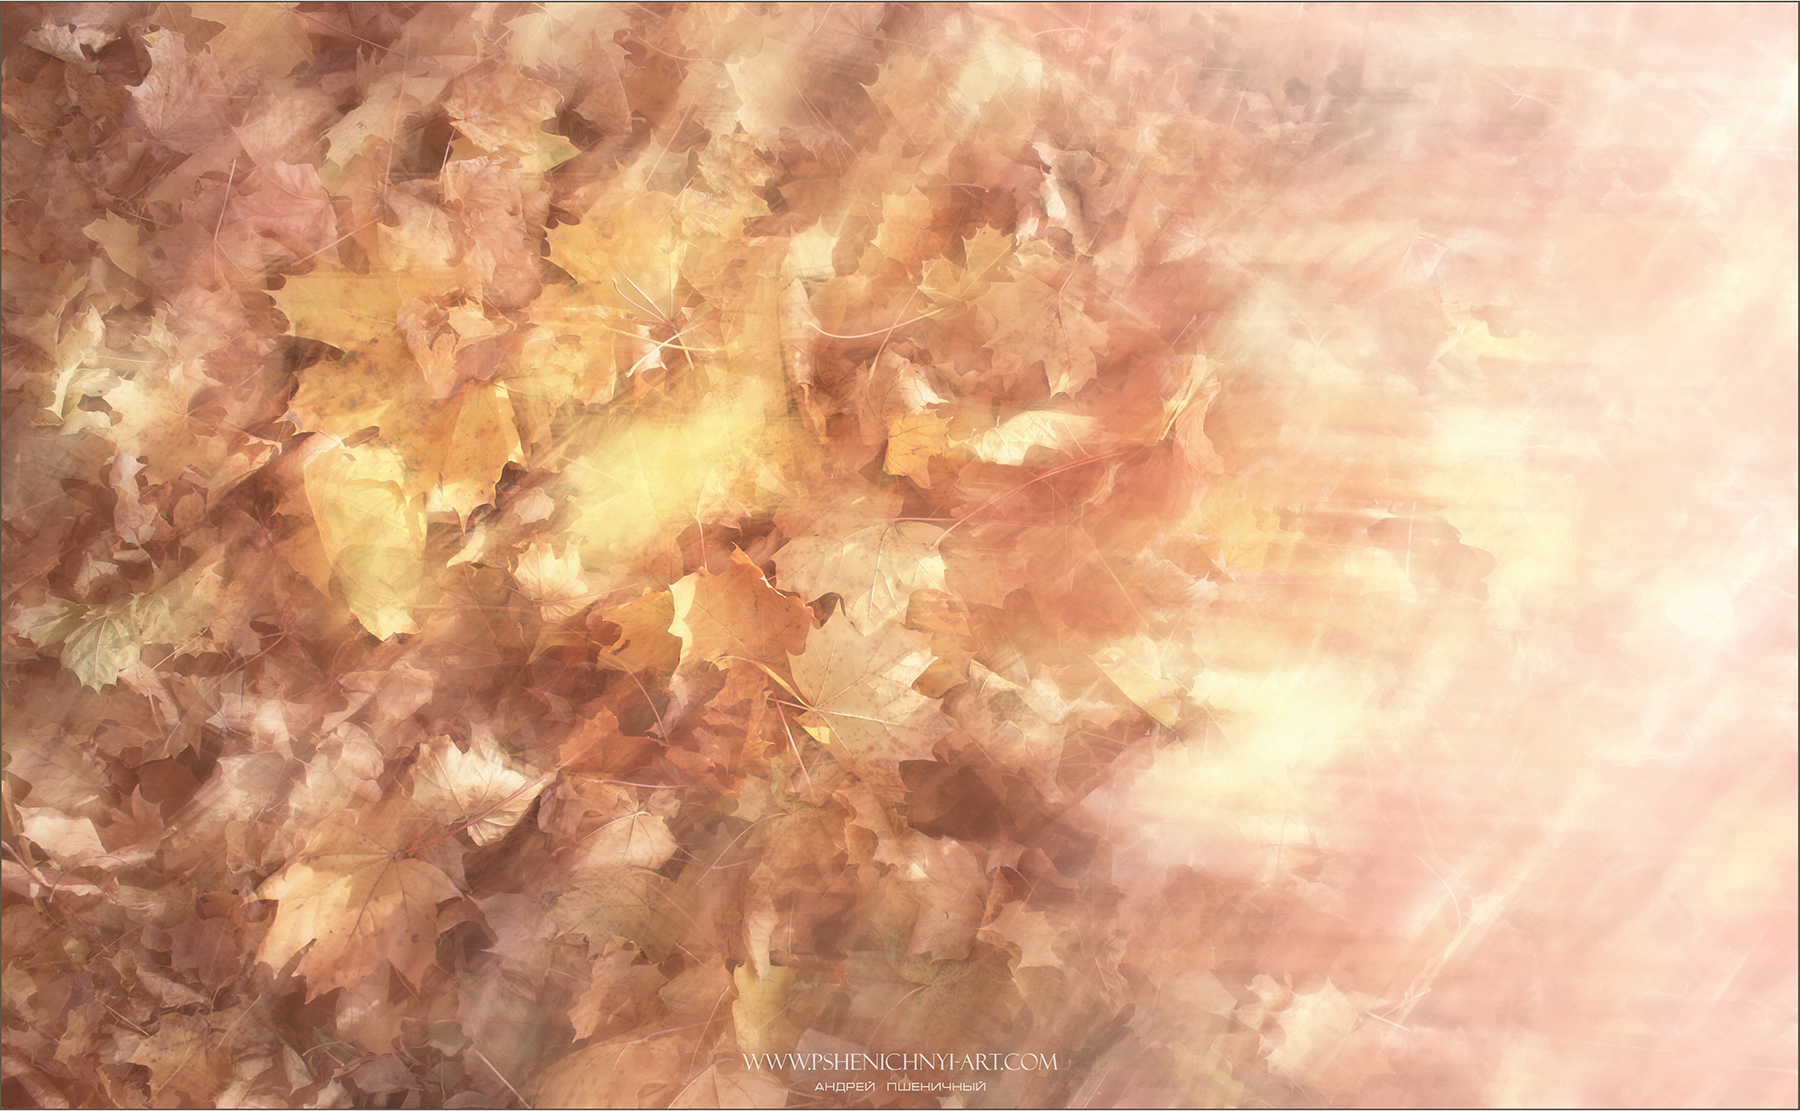 осень, опавшие листья, клён, утро, свет, абстракция, минимализм, октябрь, Пшеничный Андрей